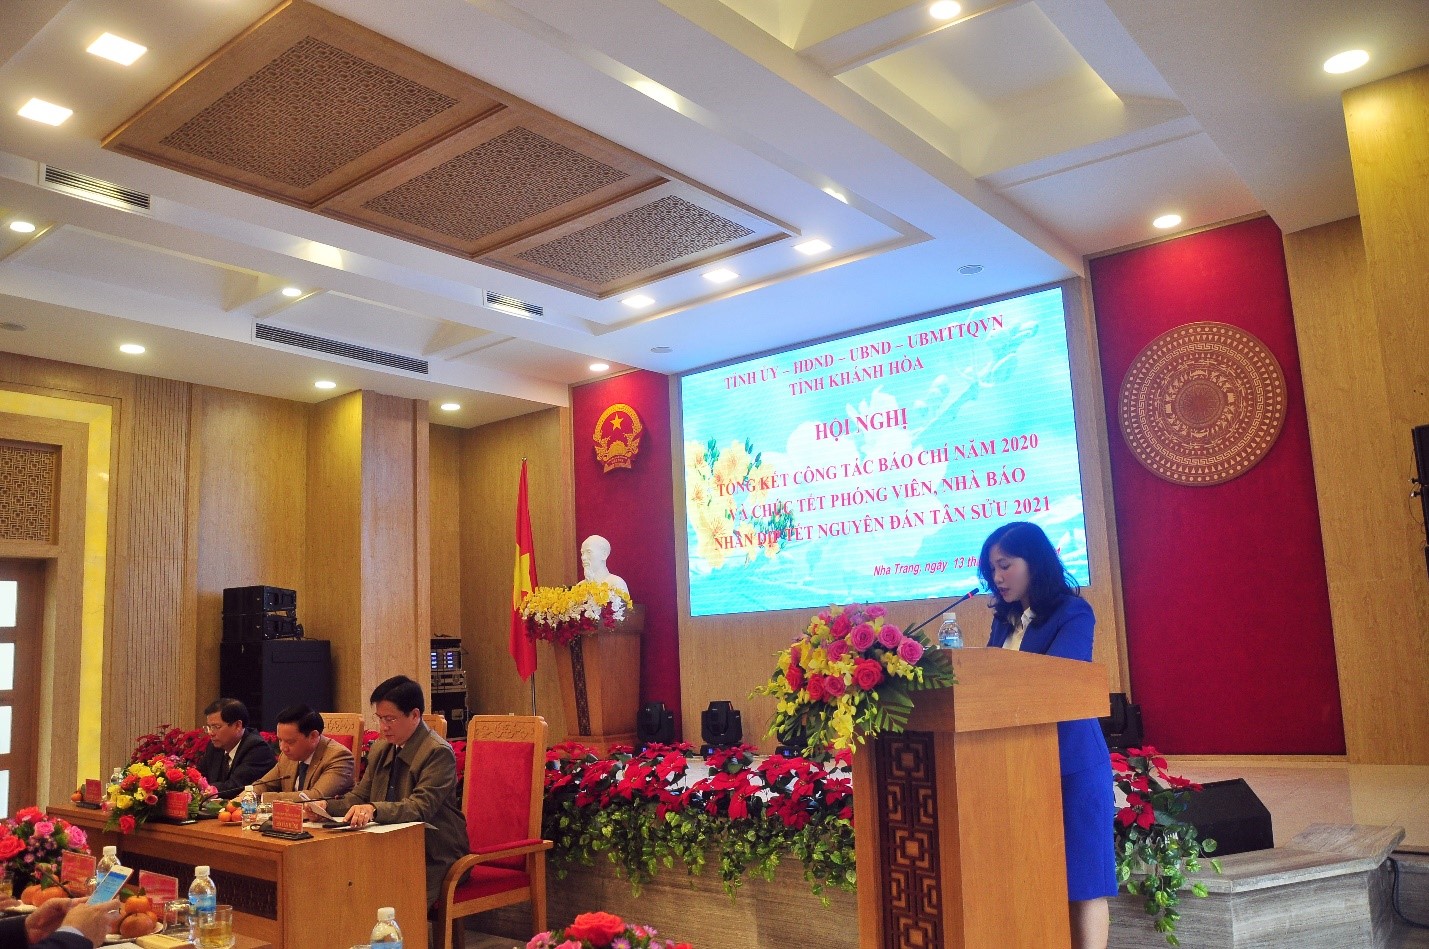 Bà Lưu Hồng Vân, Phó Trưởng ban Tuyên giáo Tỉnh ủy Khánh Hòa trình bày báo cáo tóm tắt kết quả hoạt động báo chí năm 2020